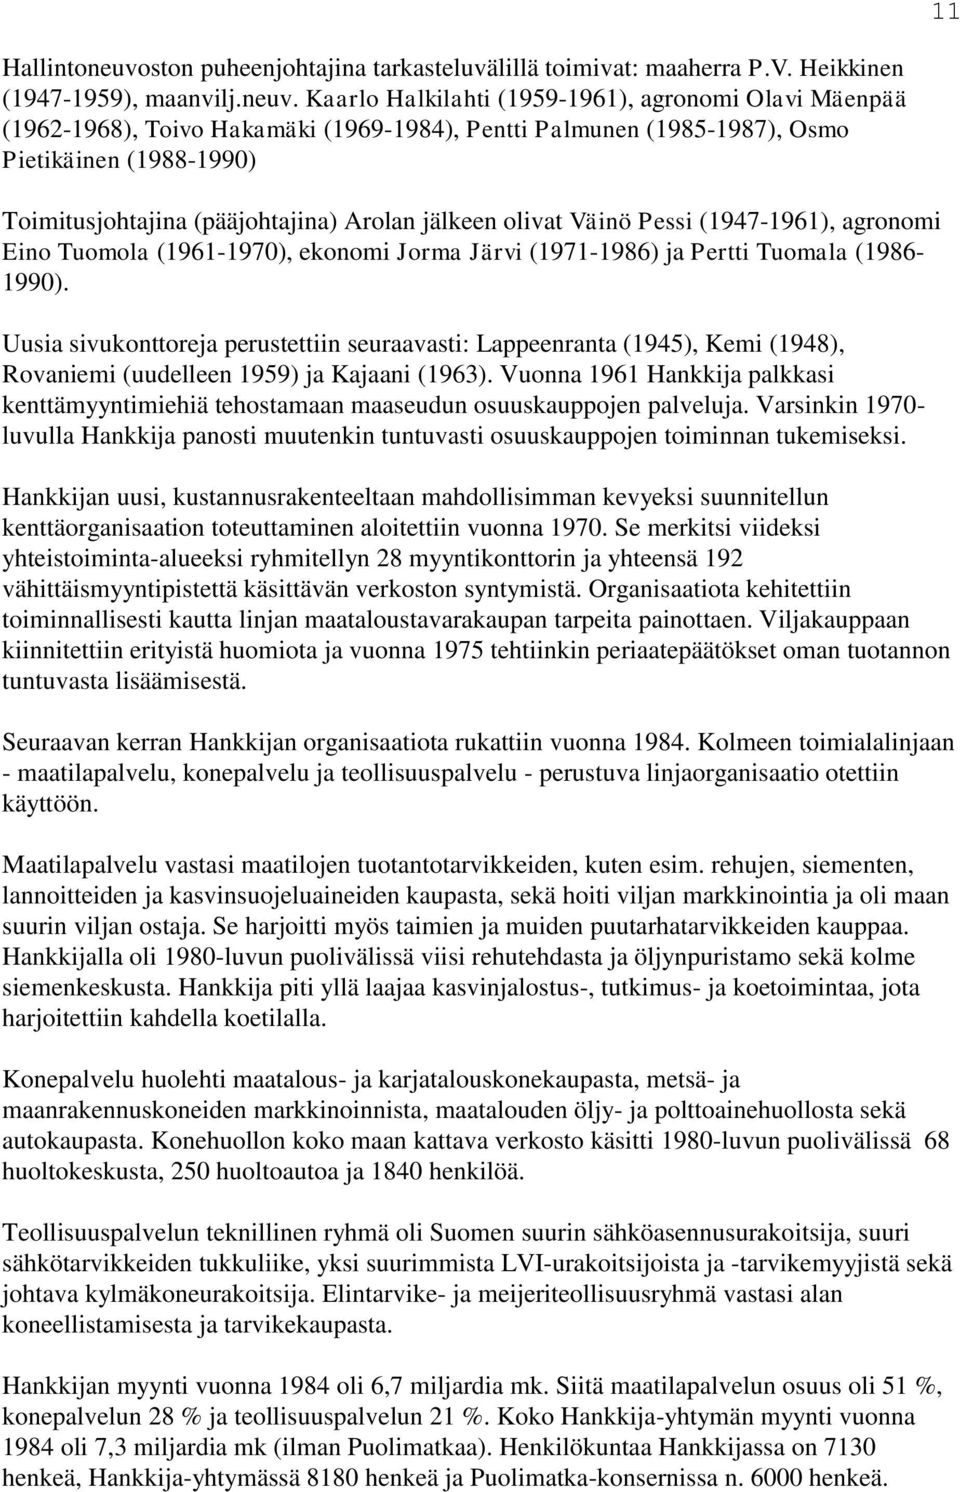 Kaarlo Halkilahti (1959-1961), agronomi Olavi Mäenpää (1962-1968), Toivo Hakamäki (1969-1984), Pentti Palmunen (1985-1987), Osmo Pietikäinen (1988-1990) Toimitusjohtajina (pääjohtajina) Arolan